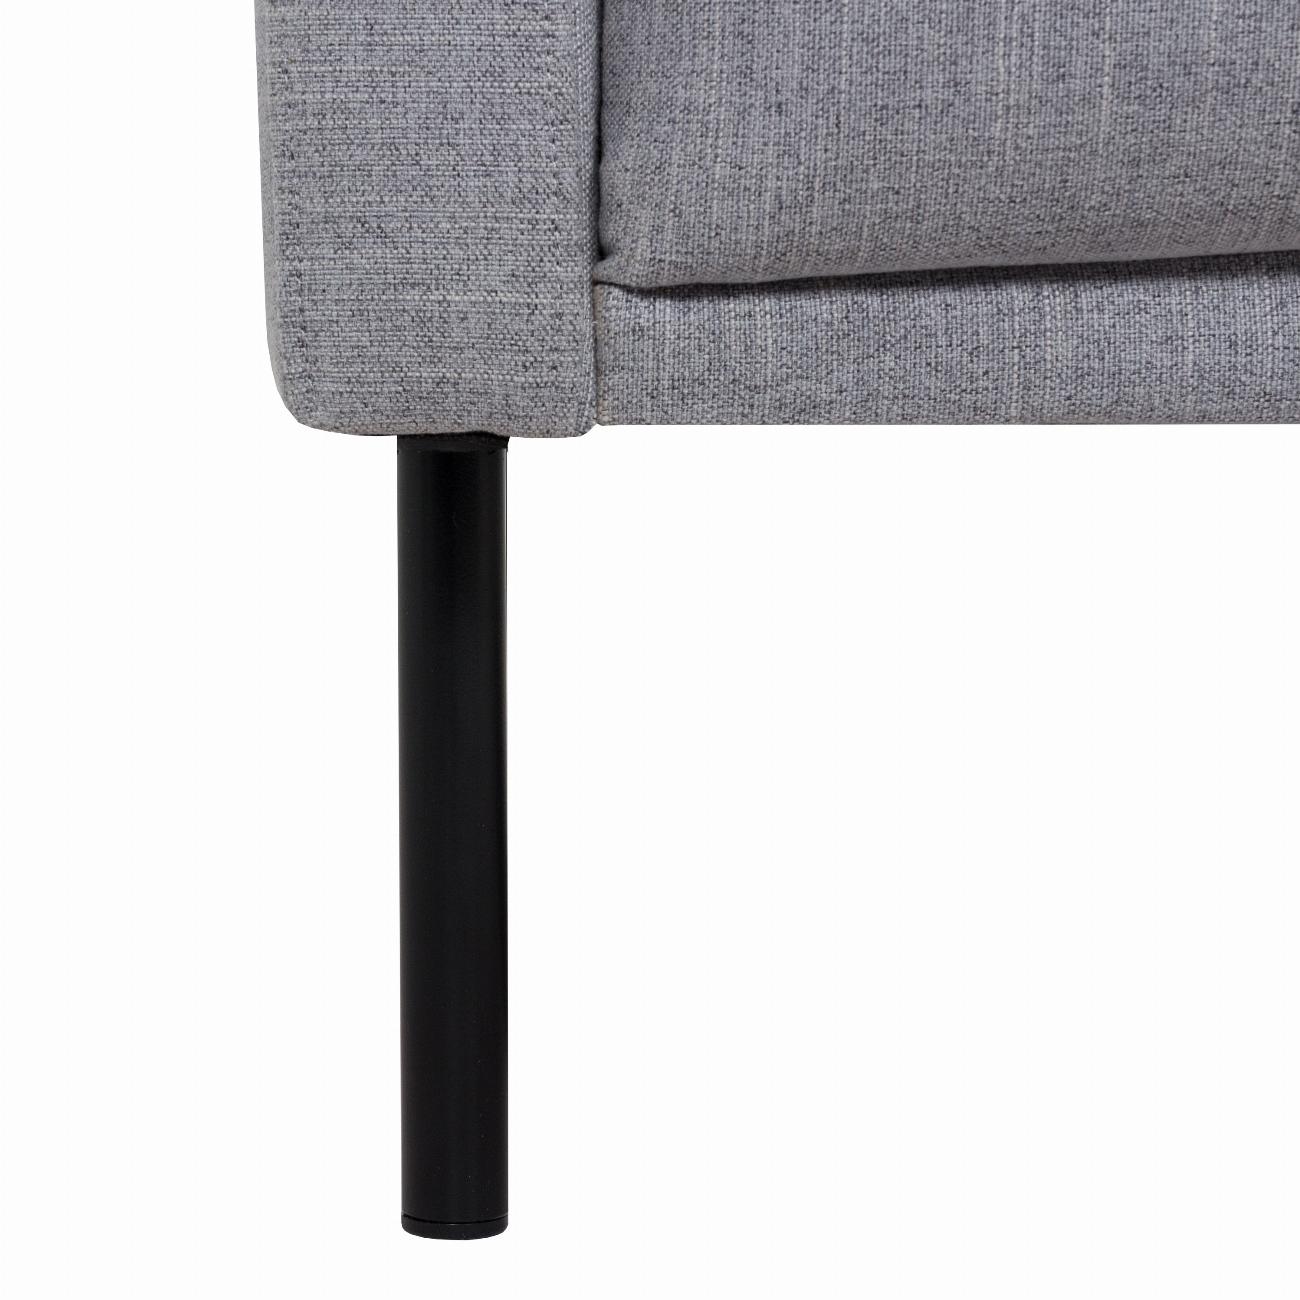 Larvik 3 Seater Sofa - Grey, Black Legs